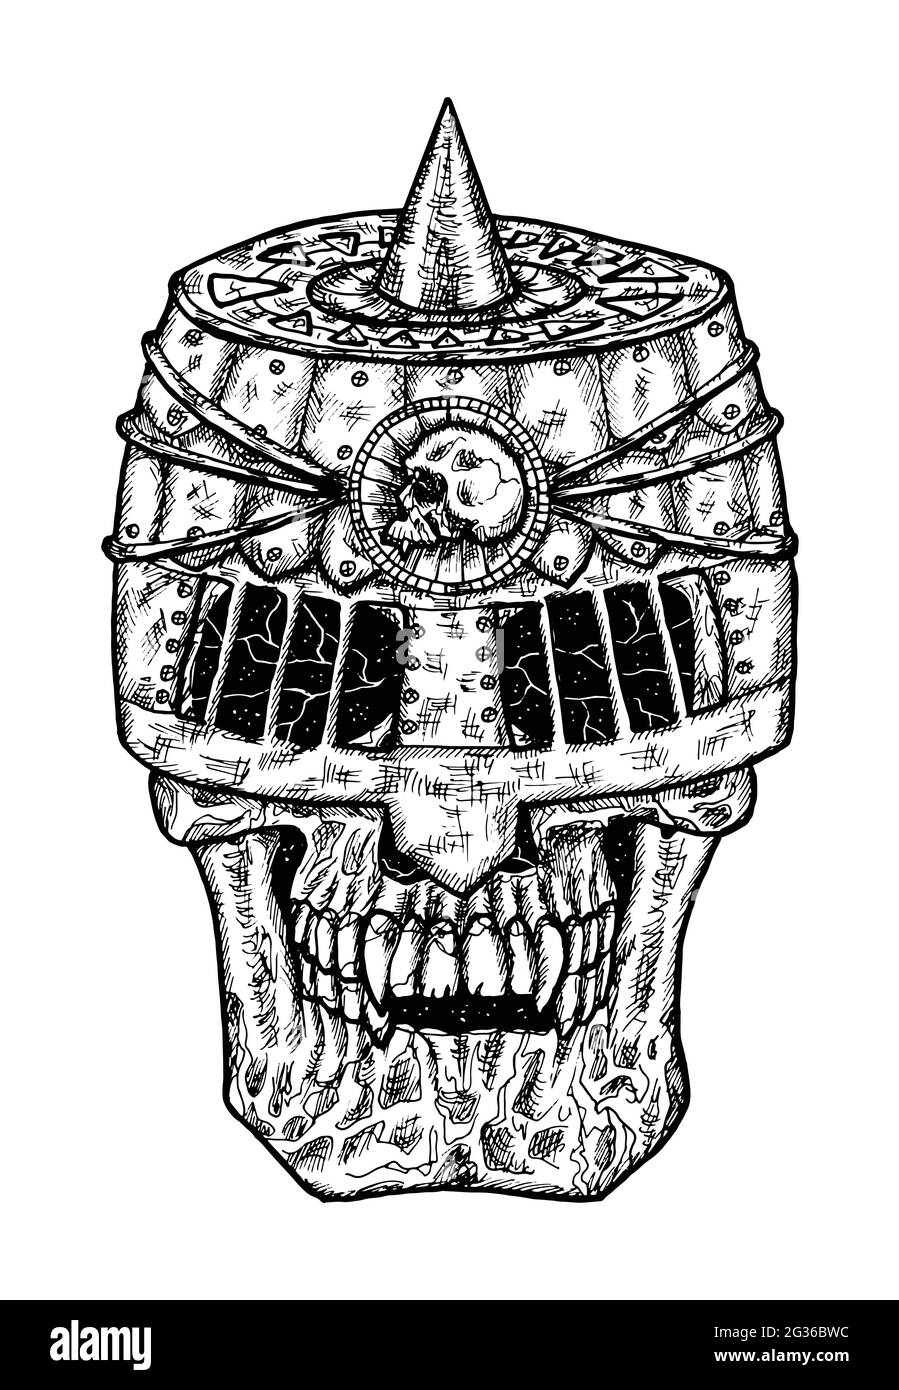 Illustration noire et blanche effrayante du crâne vectoriel portant une barre à couteaux. Dessin isolé mystique pour Halloween avec concept ésotérique, gothique, occulte Illustration de Vecteur